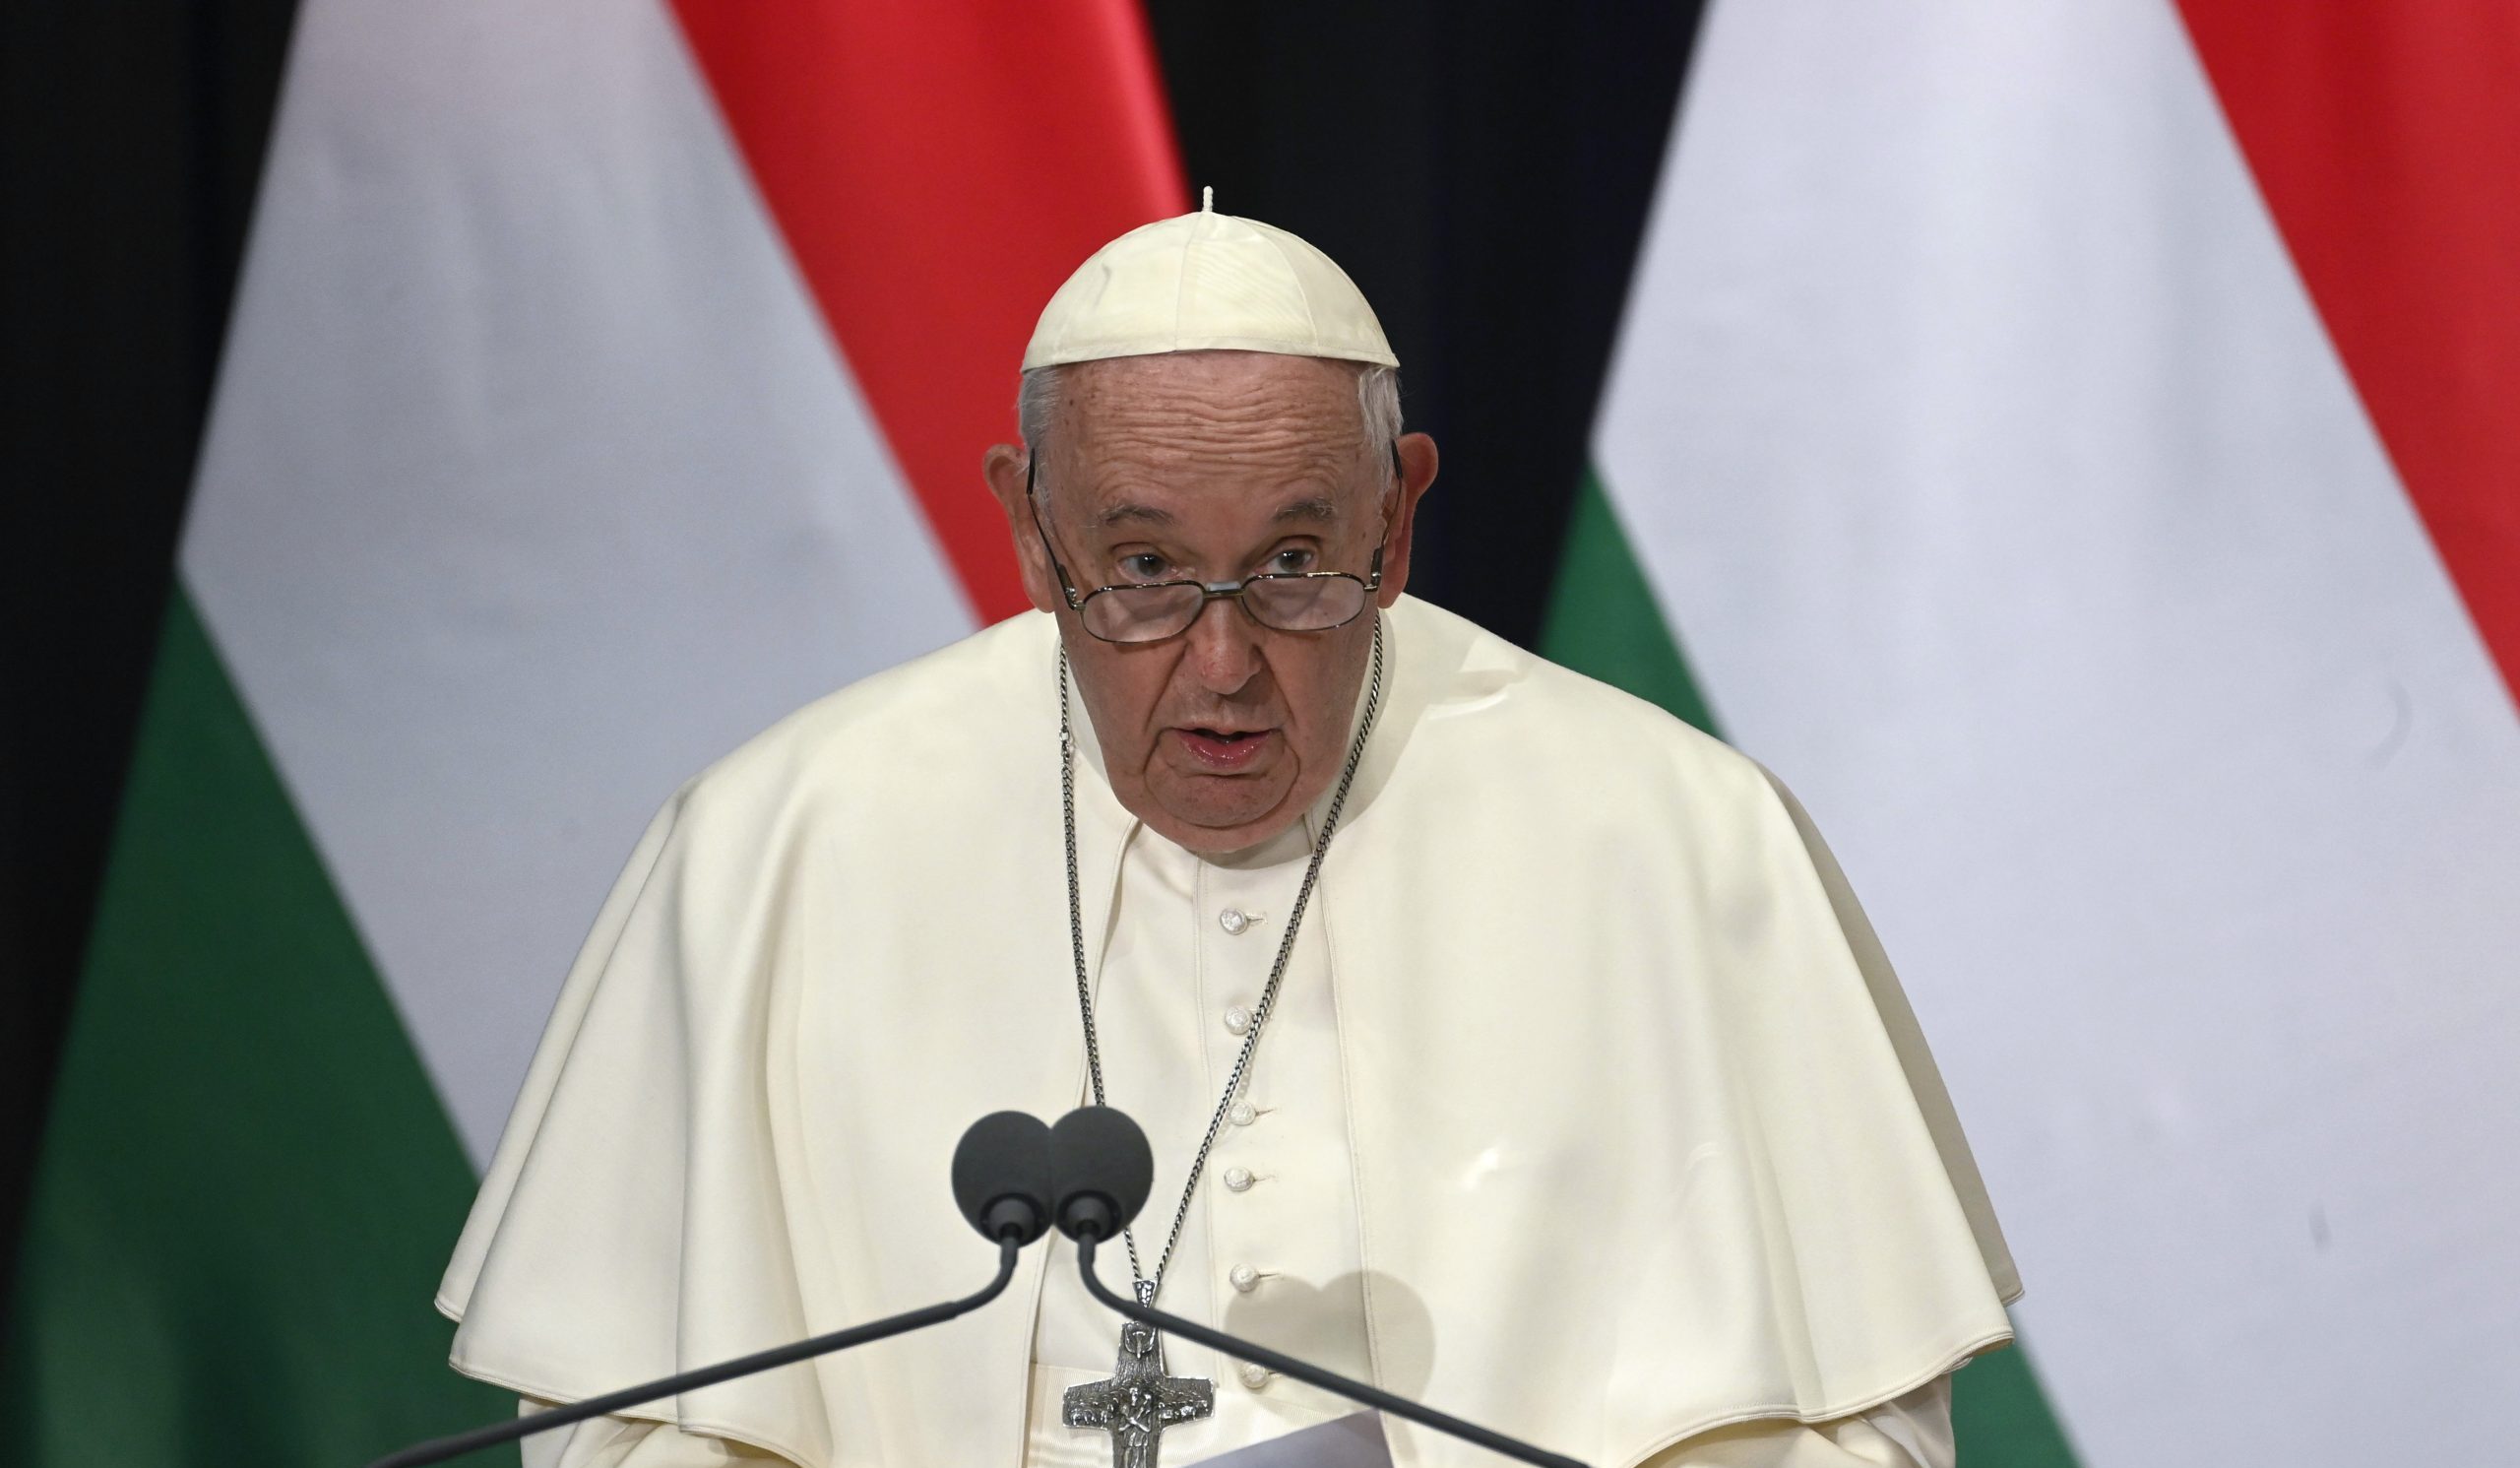 Die Stimme der Friedensbefürworter verklingt, sagte der Papst in Ungarn